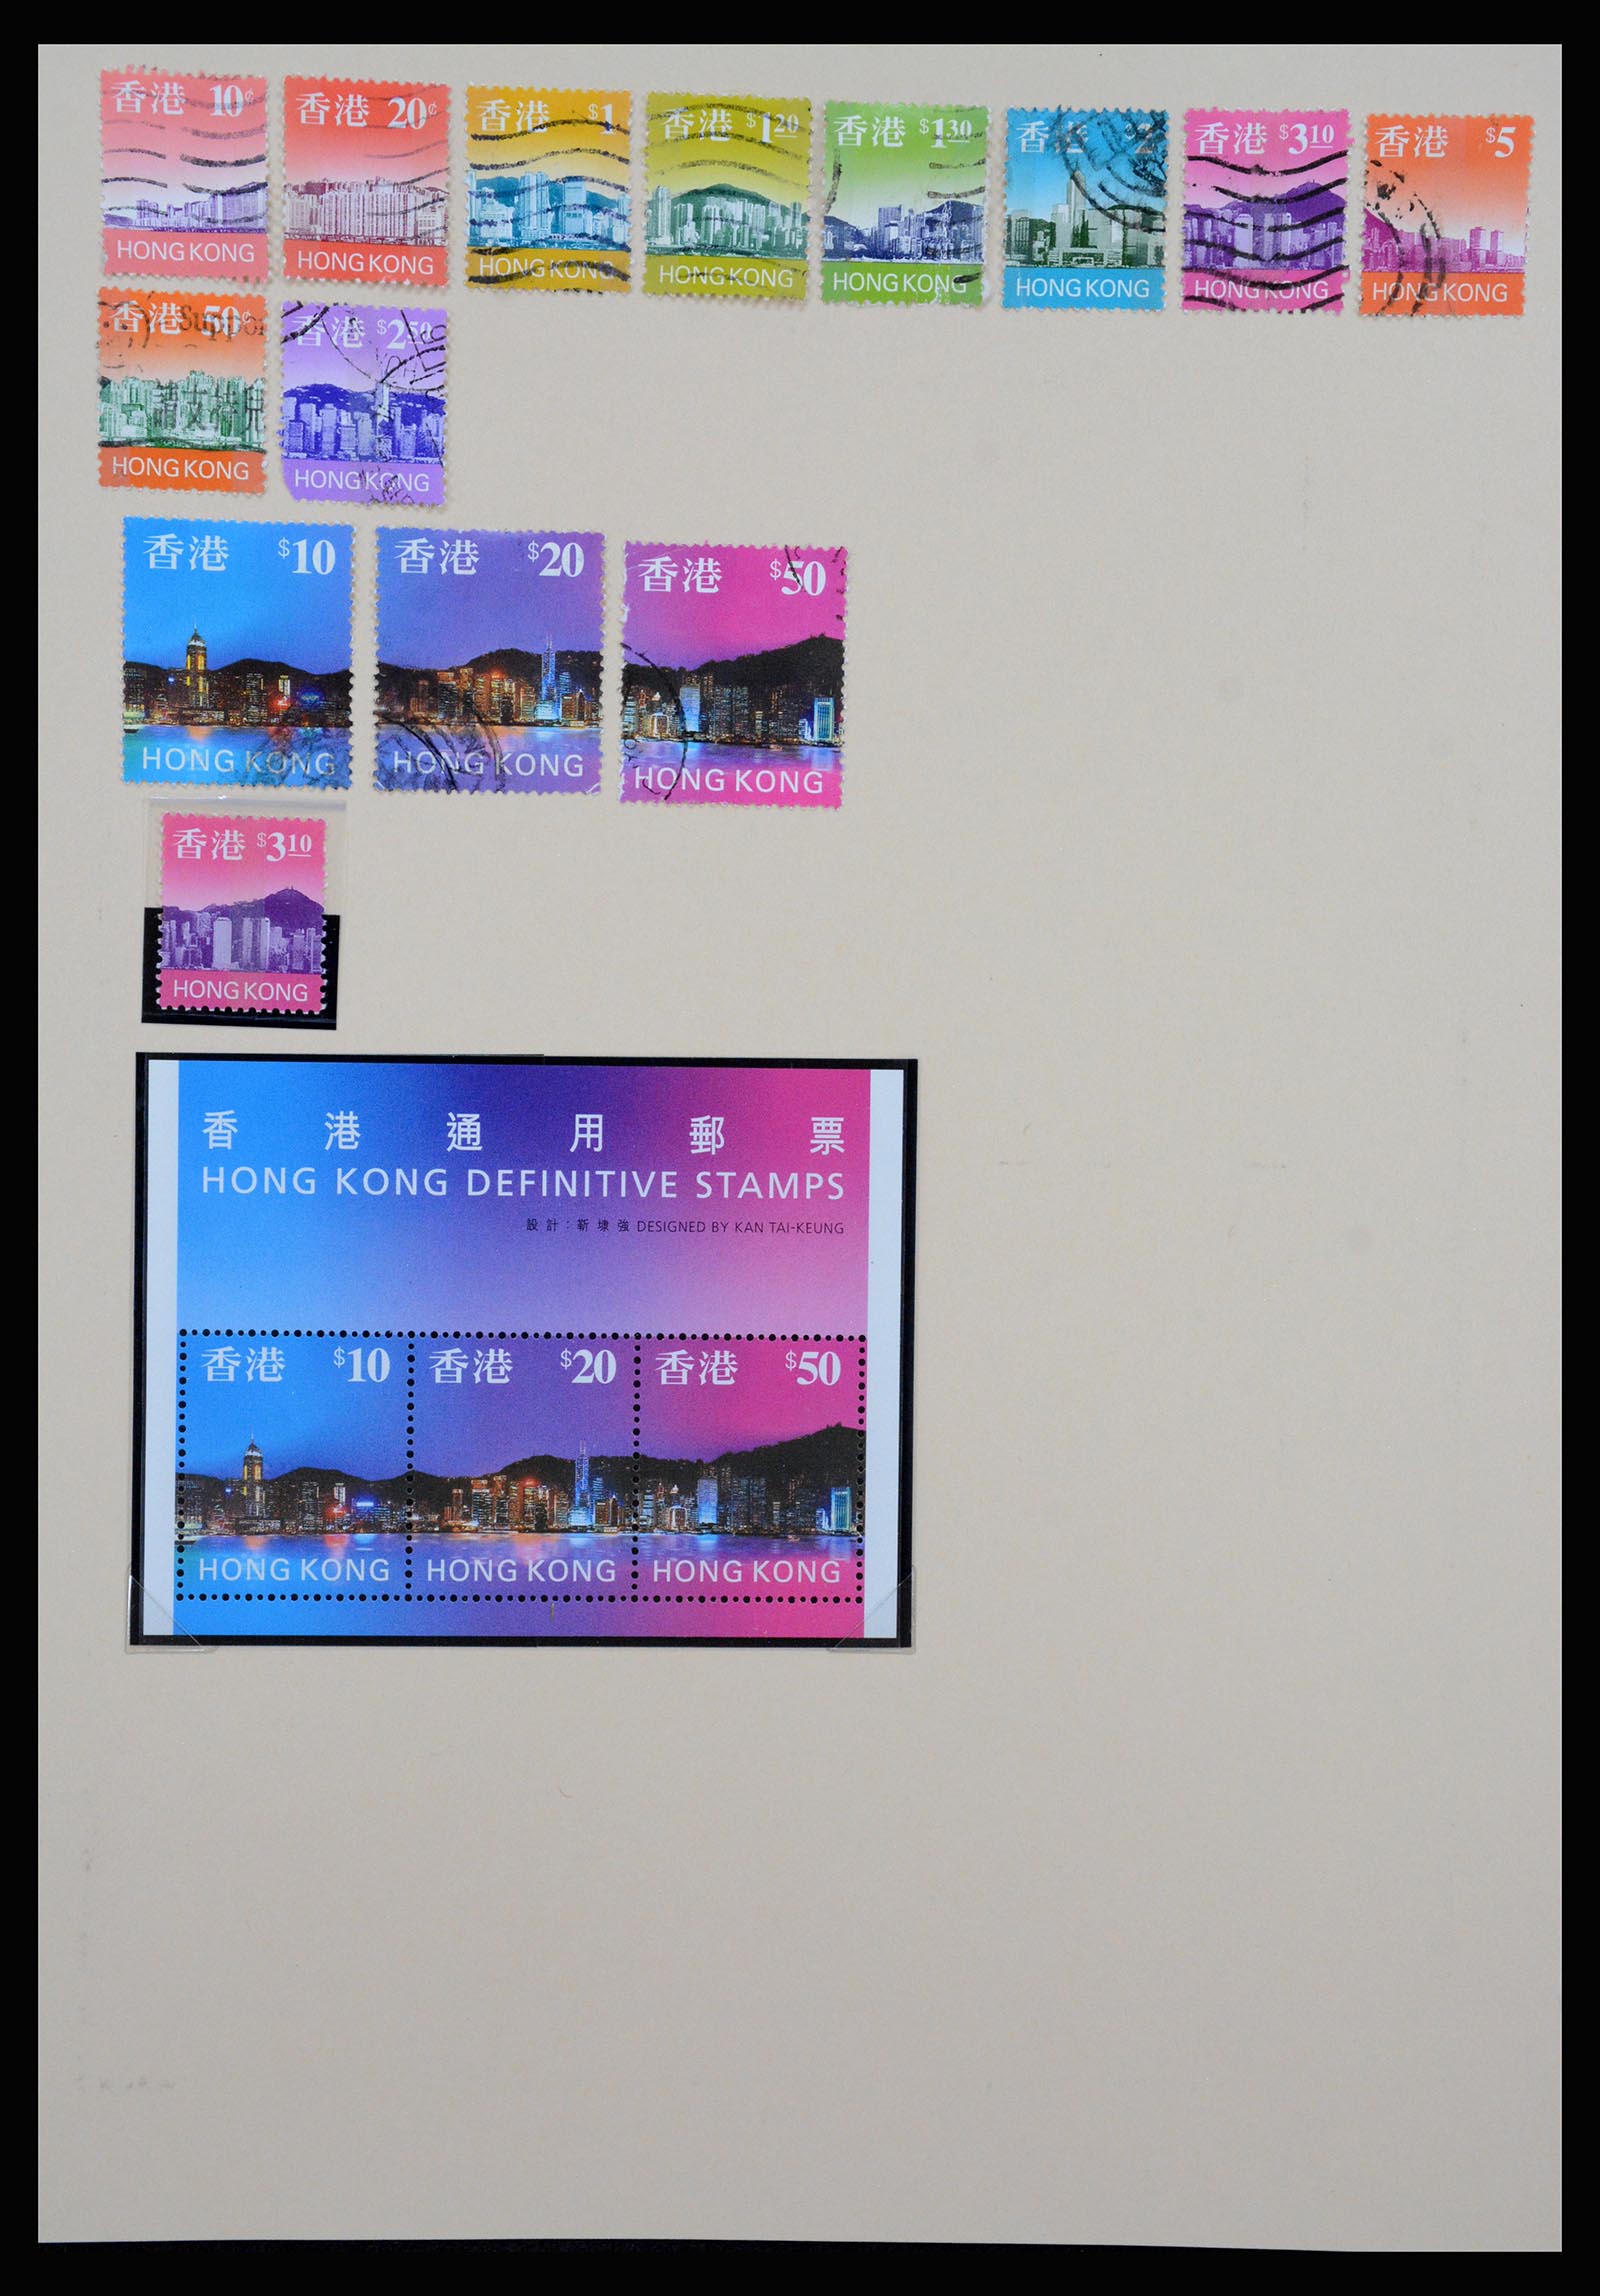 37210 090 - Stamp collection 37210 Hong Kong 1862-2000.